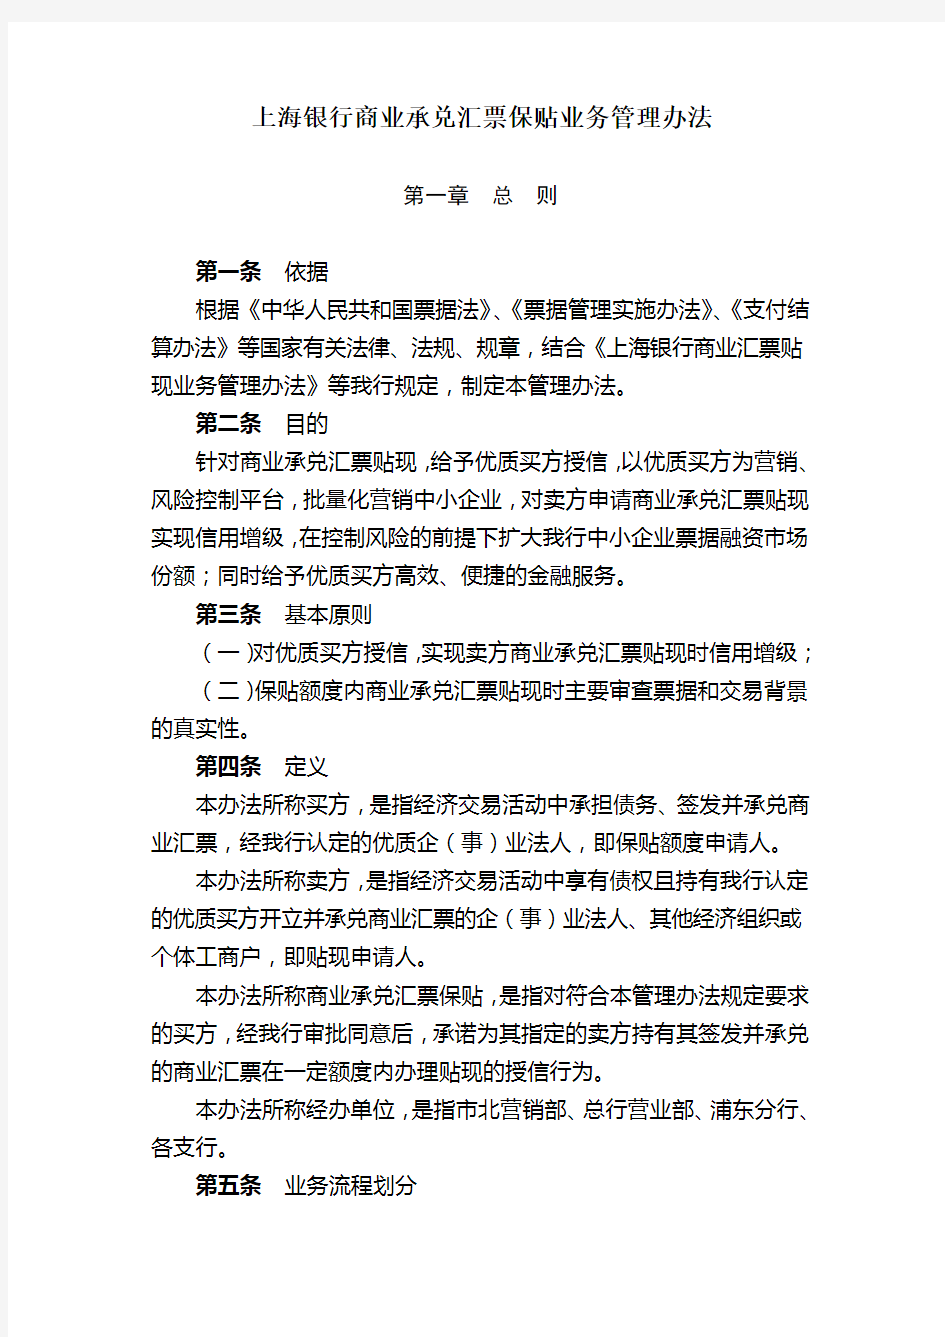 上海银行商业承兑汇票保贴业务管理办法及相关内容